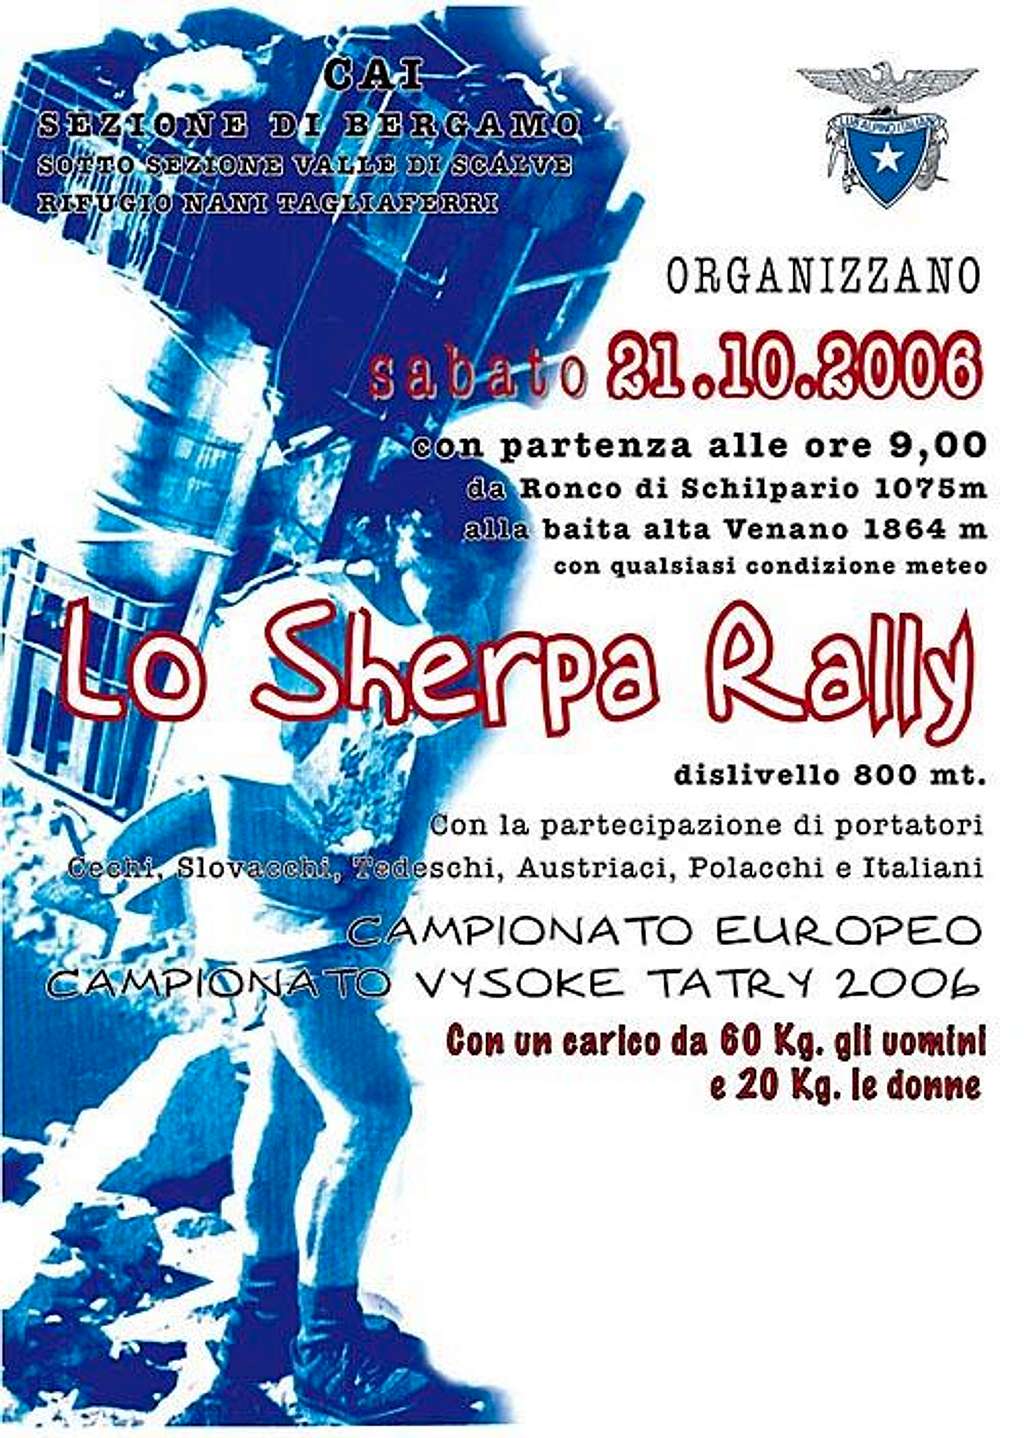 Šerpa rallye 2006 poster